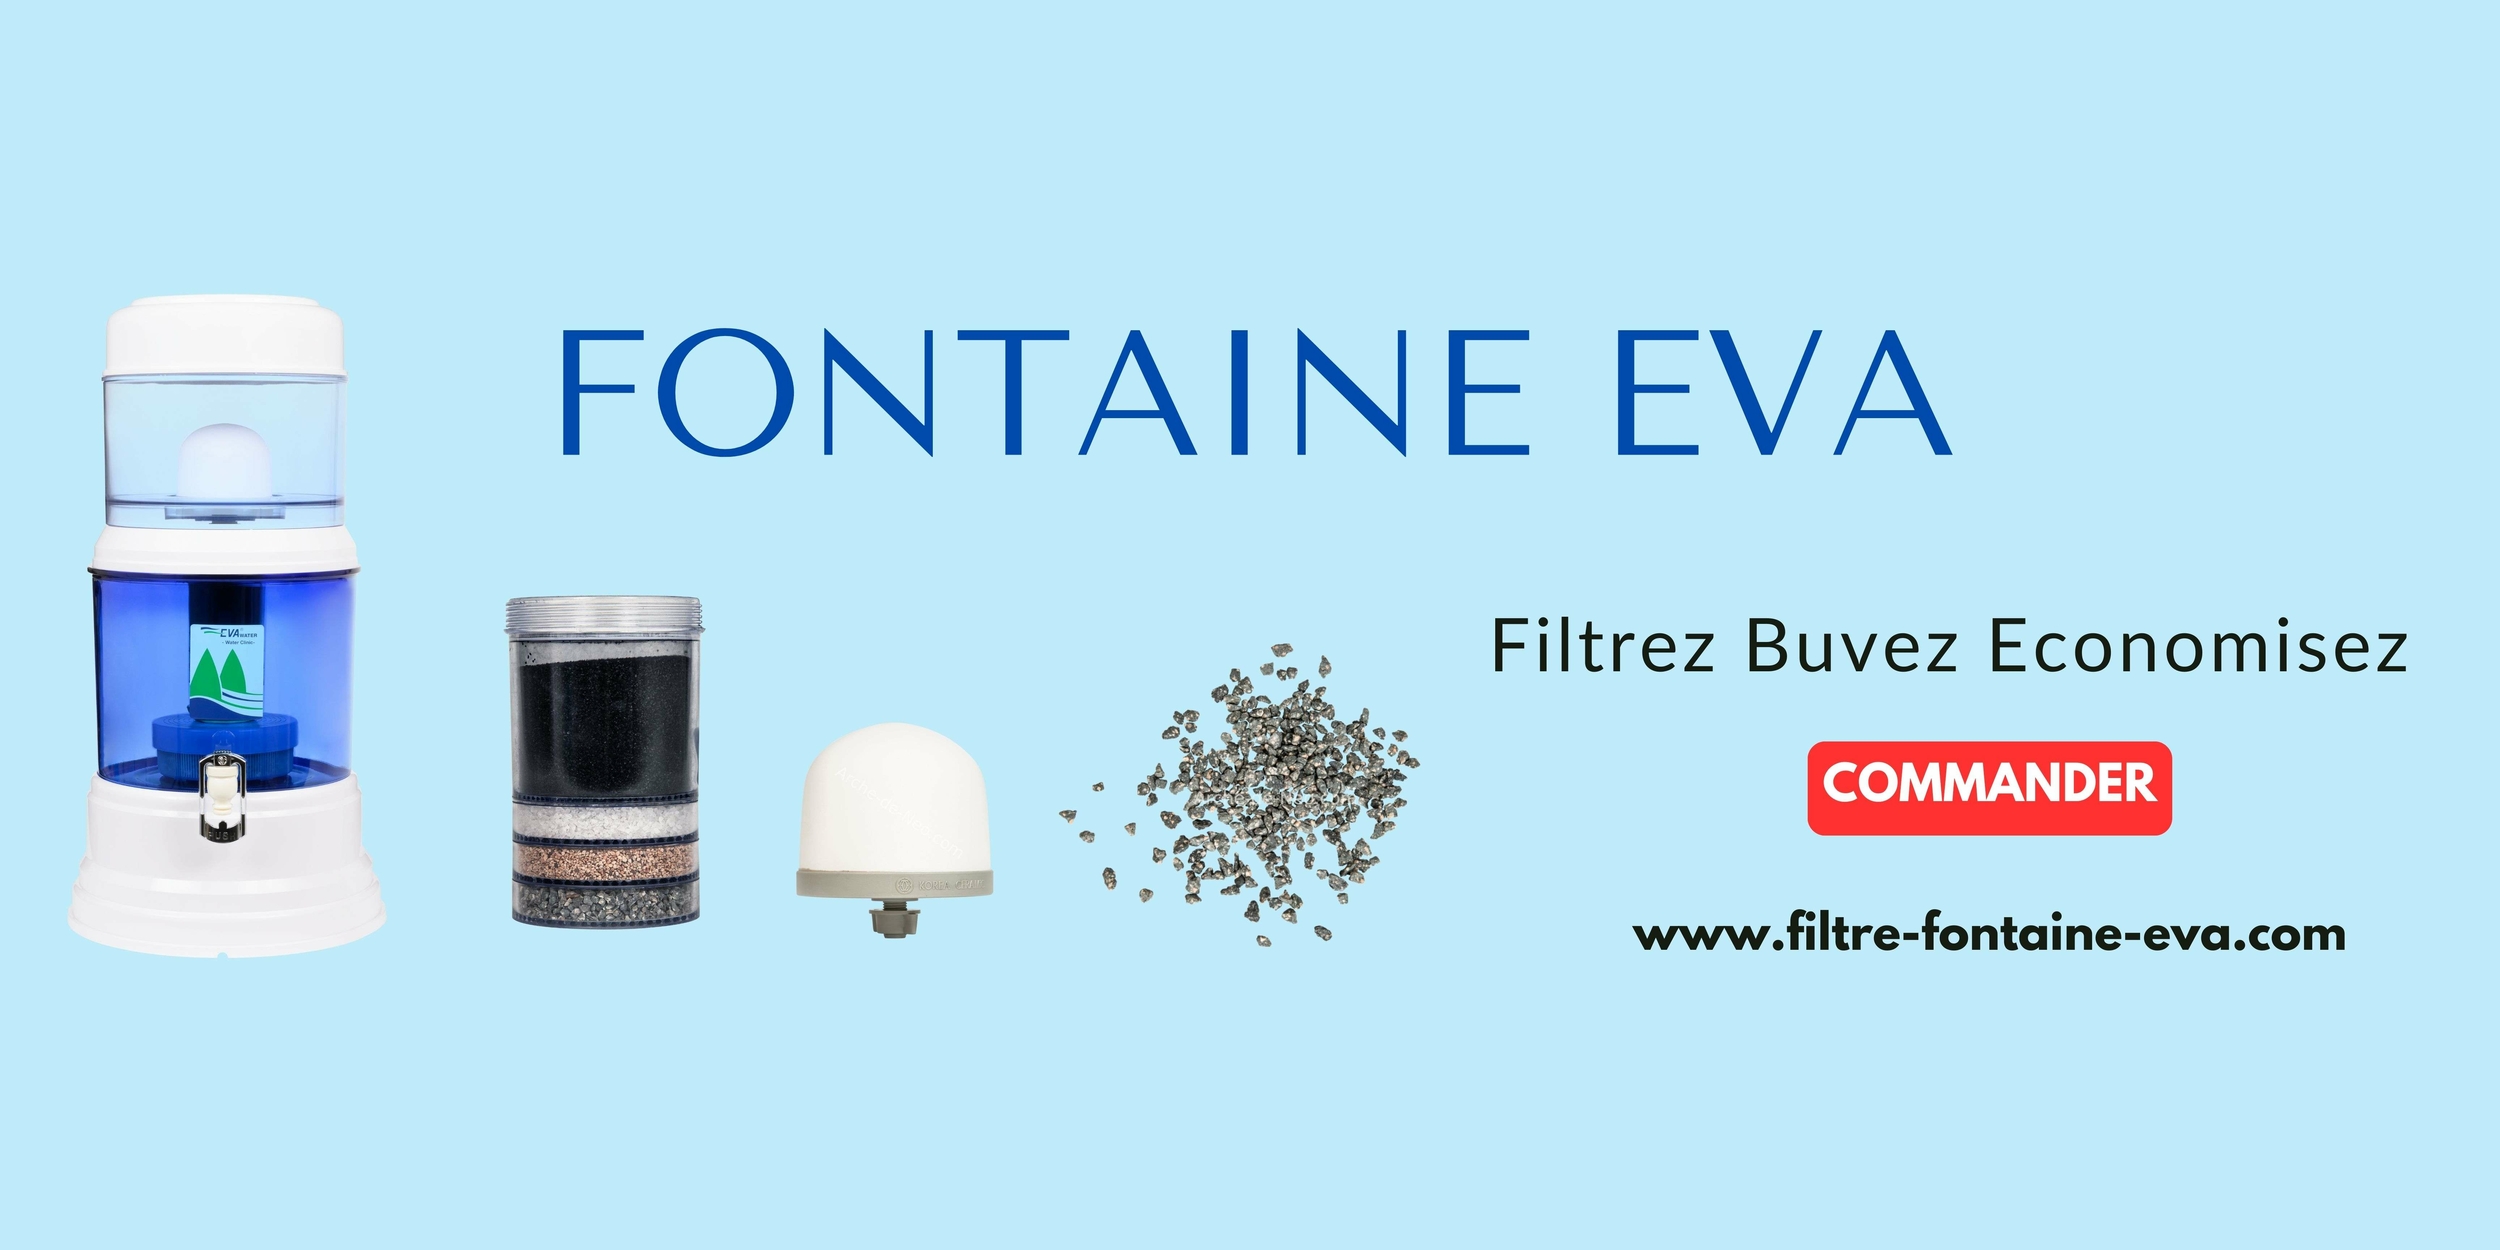 Filtre Fontaine EVA : Eau Purifiée par Filtration Avancée